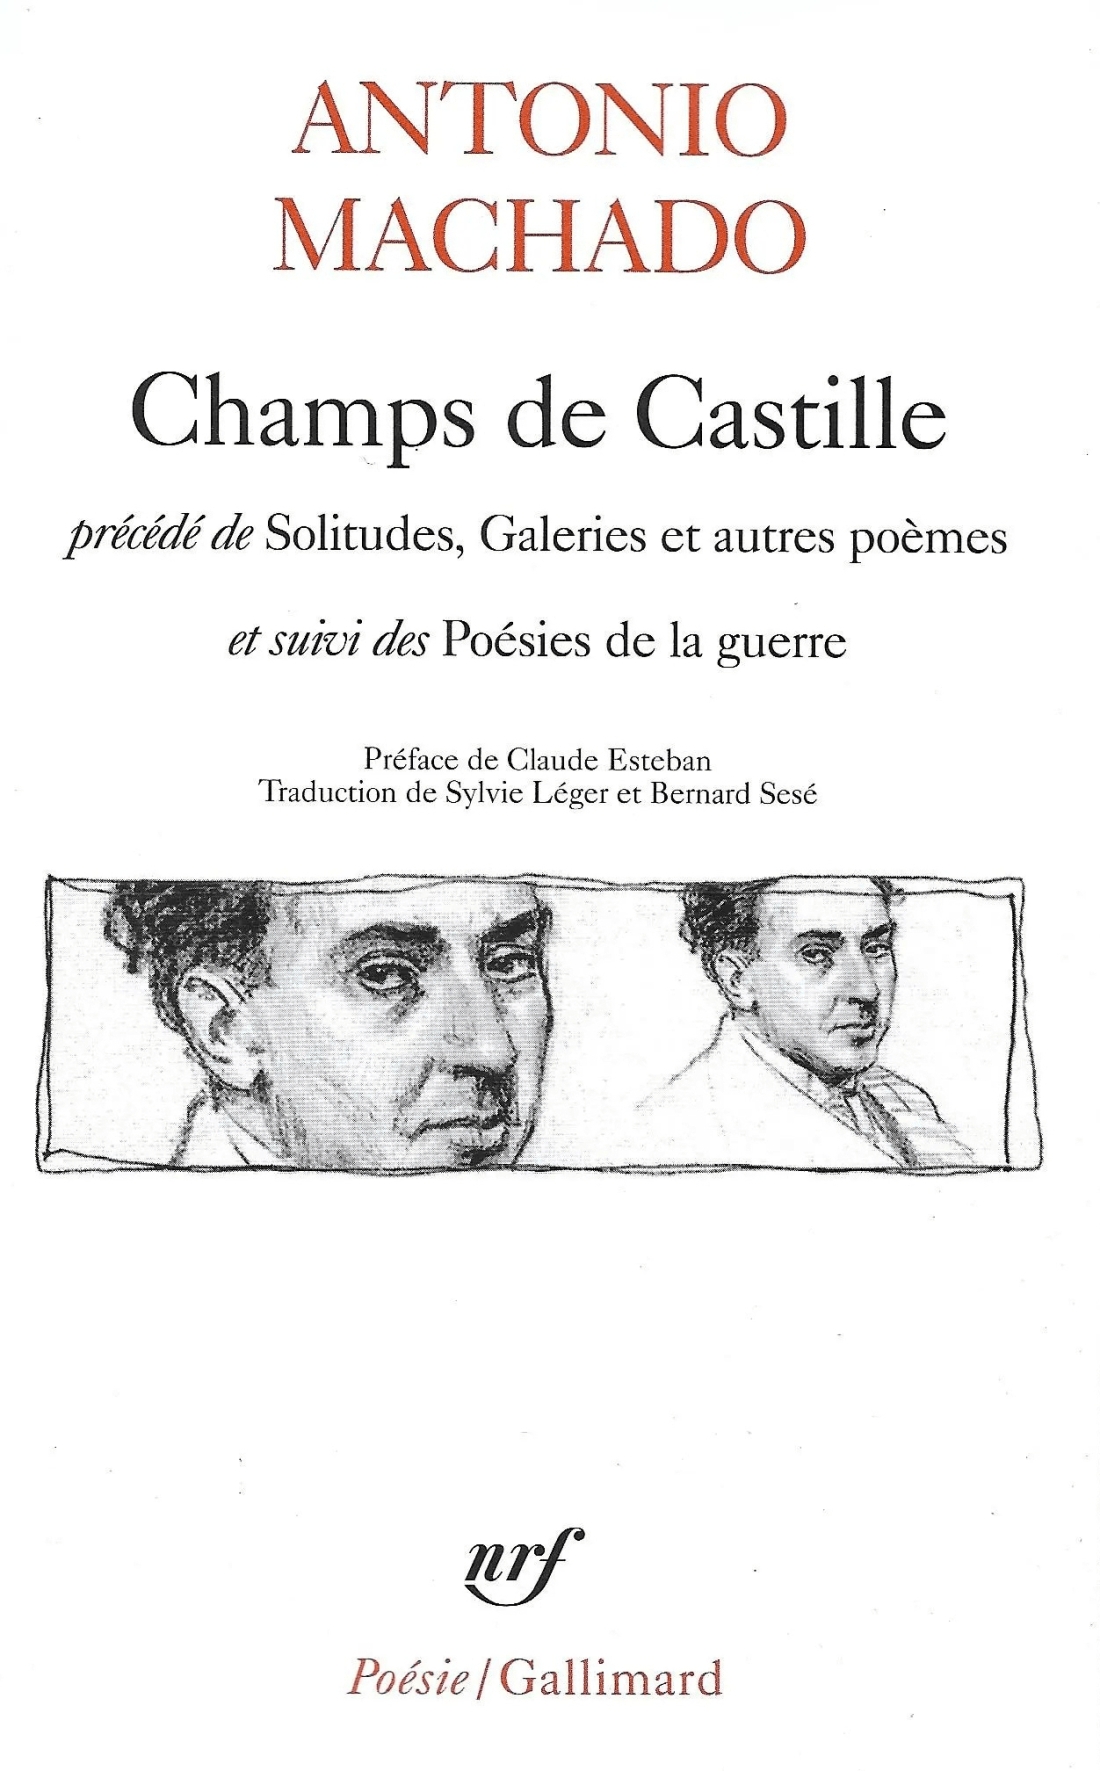 Antonio Machado, Champs de Castille